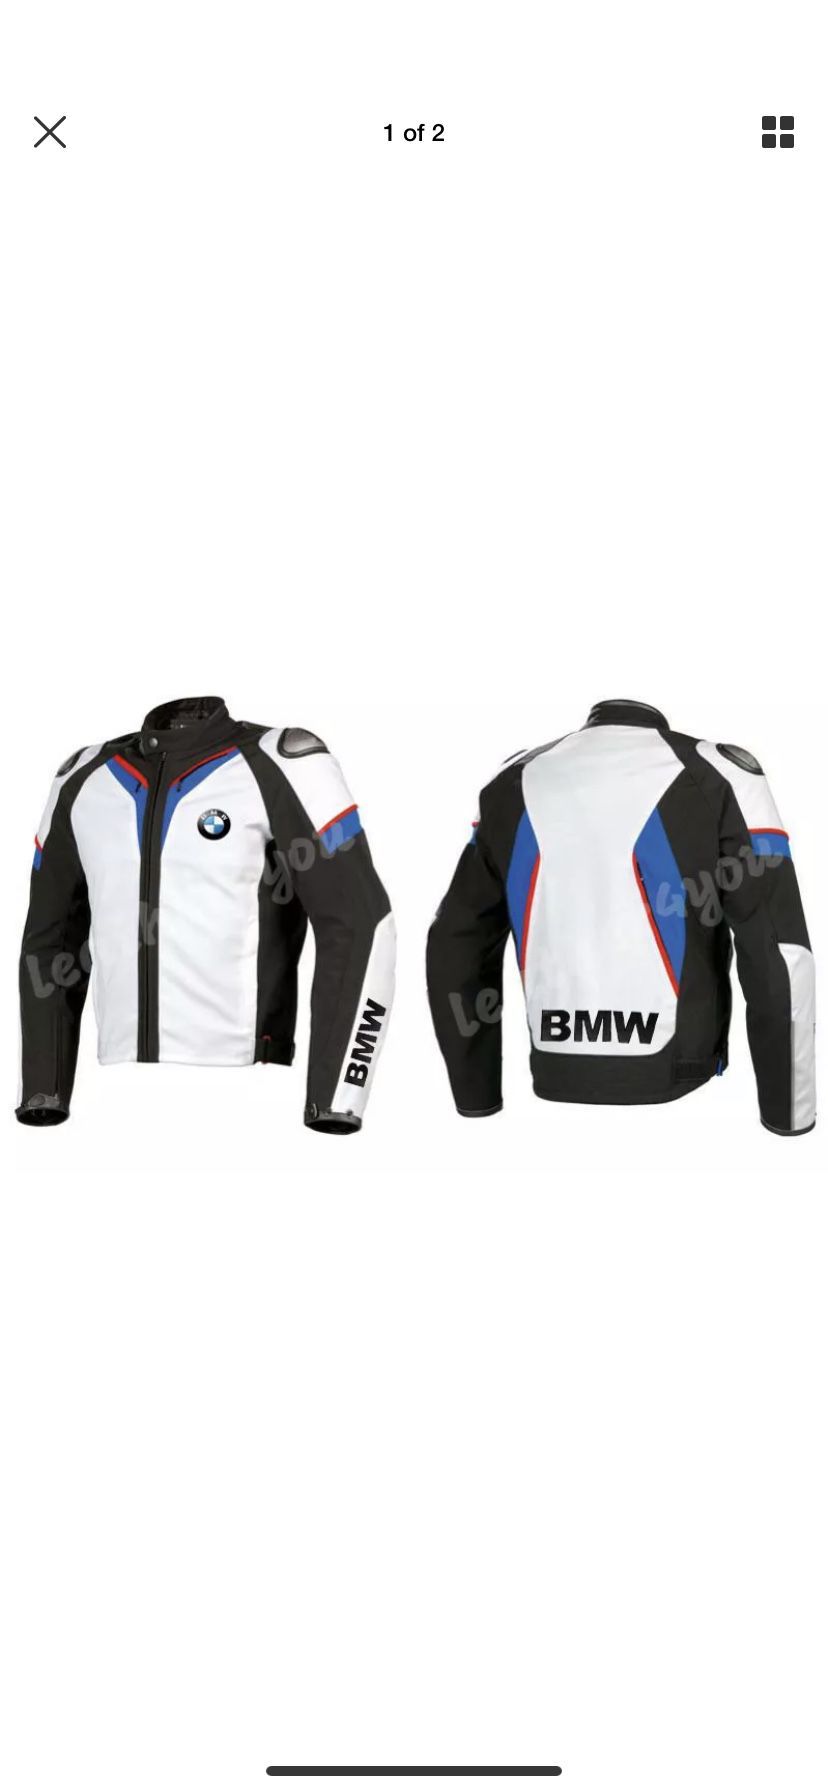 BMW Leather motorcycle riding jacket size Large/44